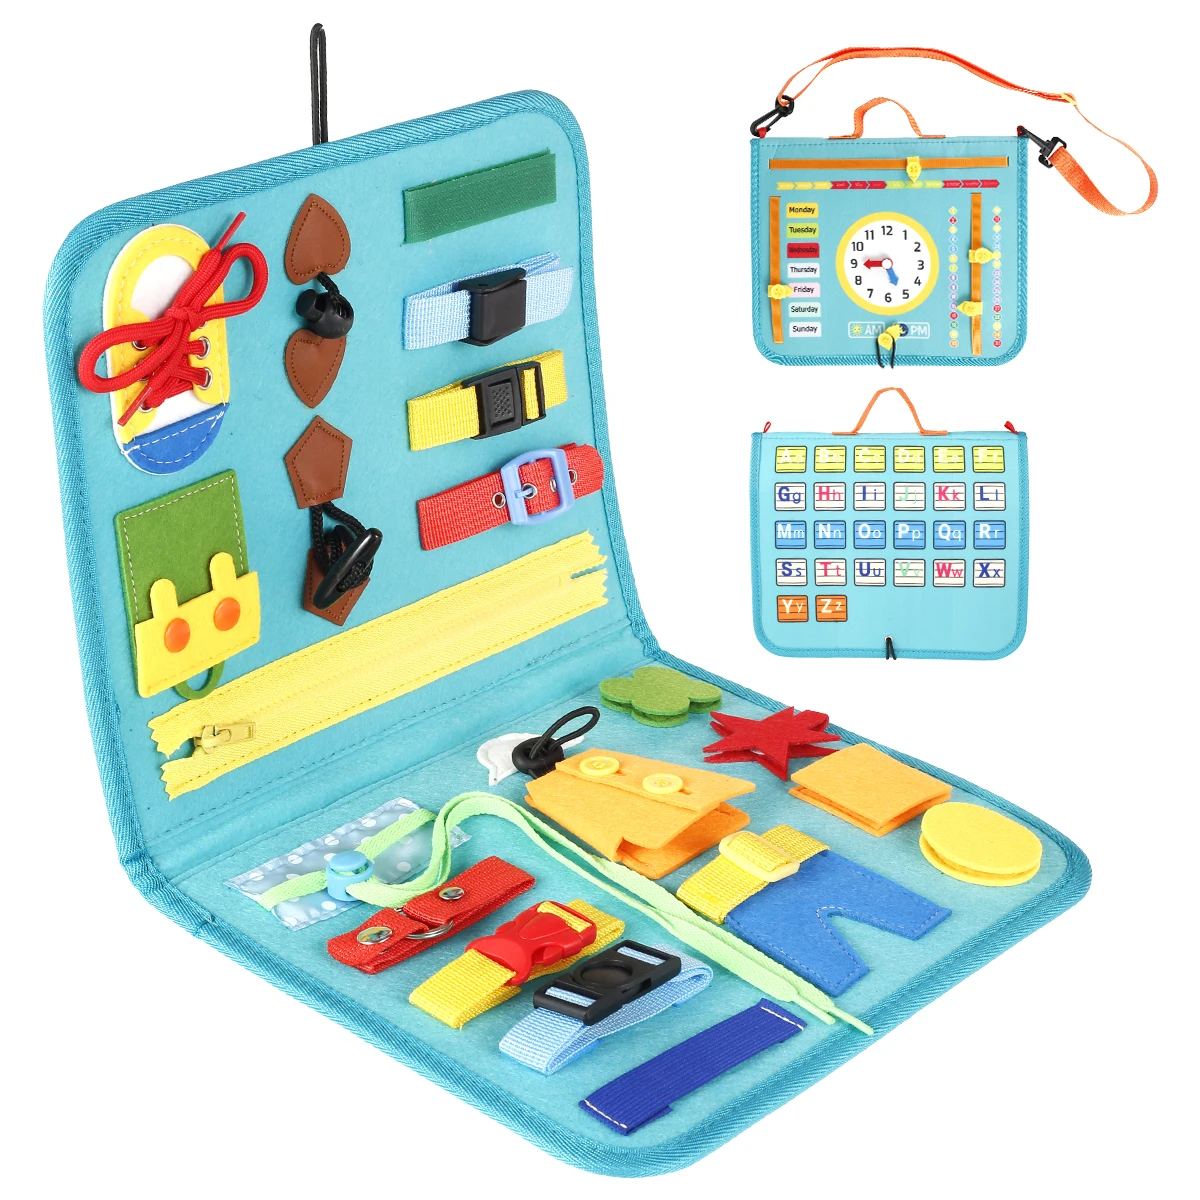 

Детская Пряжка для доски со старой застежкой-молнией, инструмент для шнуровки, игрушка Монтессори для раннего образования, вспомогательные...